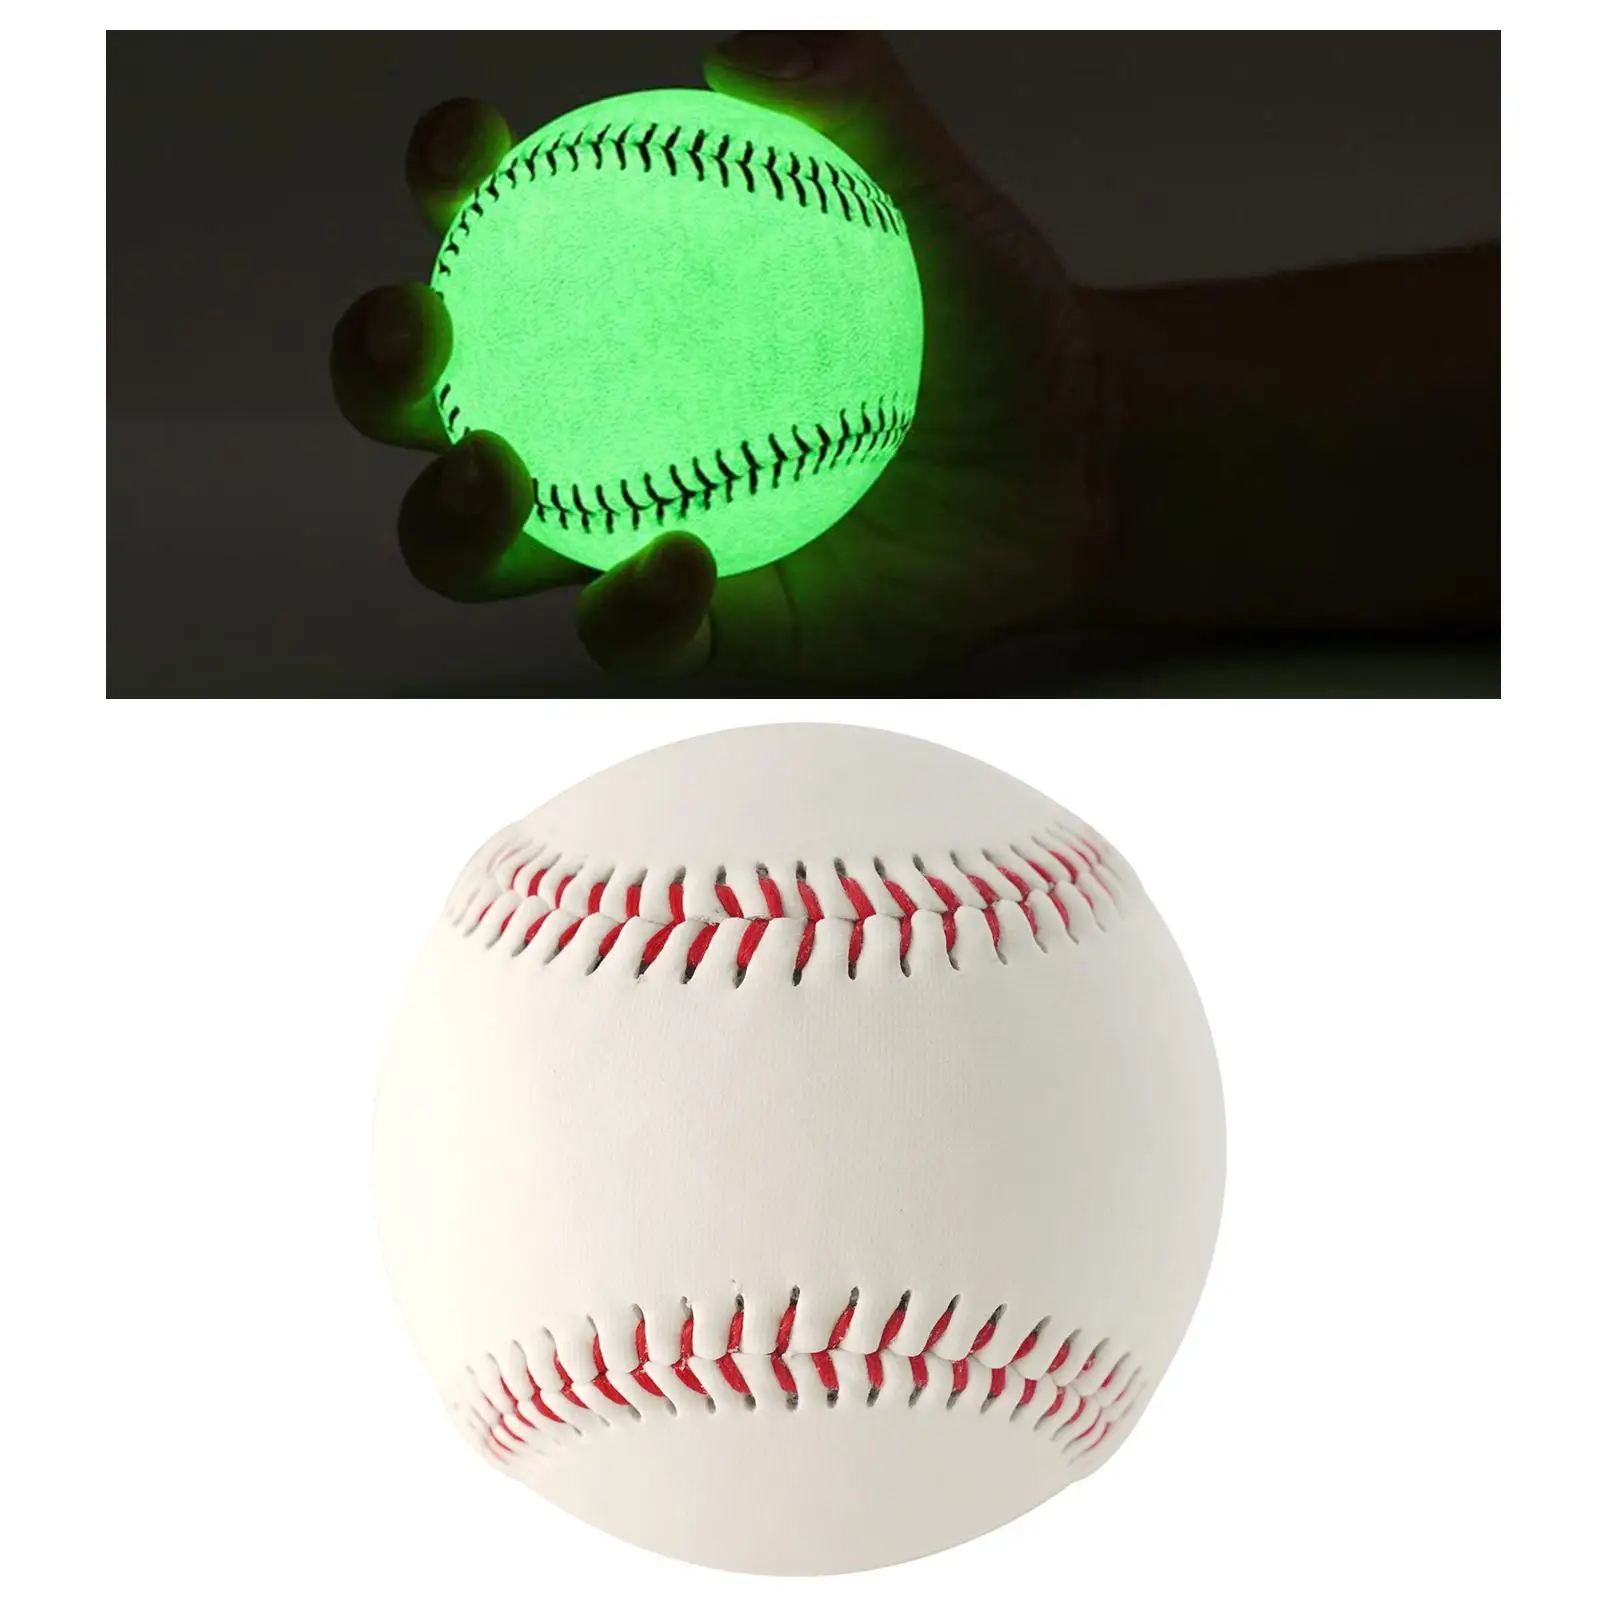 Light up Baseball Night Training Baseball for Baseball Fans Boys Beginner